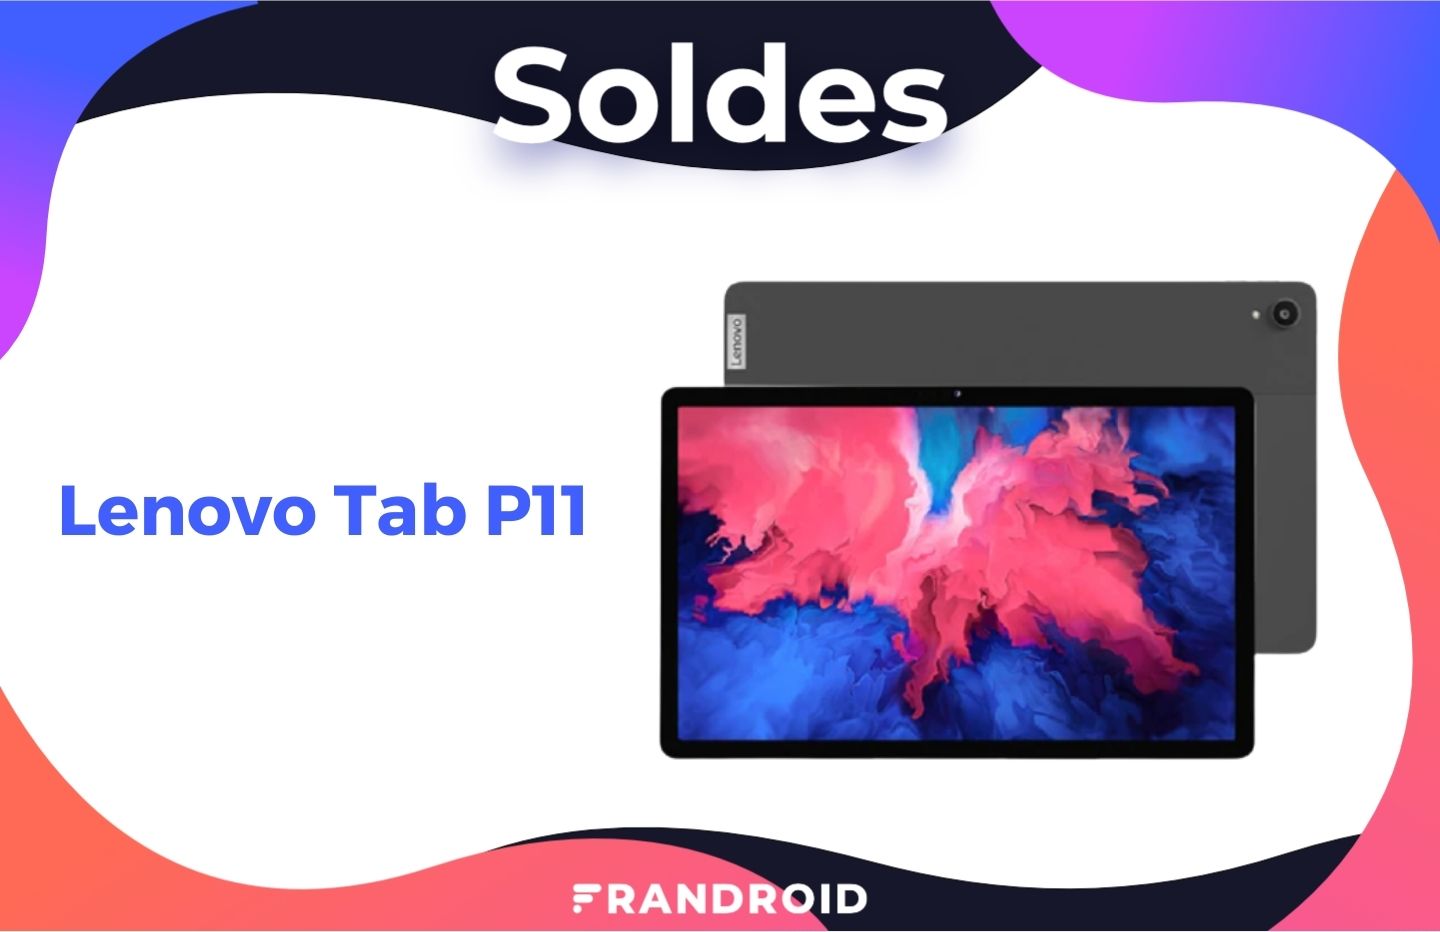 La tablette familiale Lenovo Tab P11 est soldée à 159 euros (-43 %)